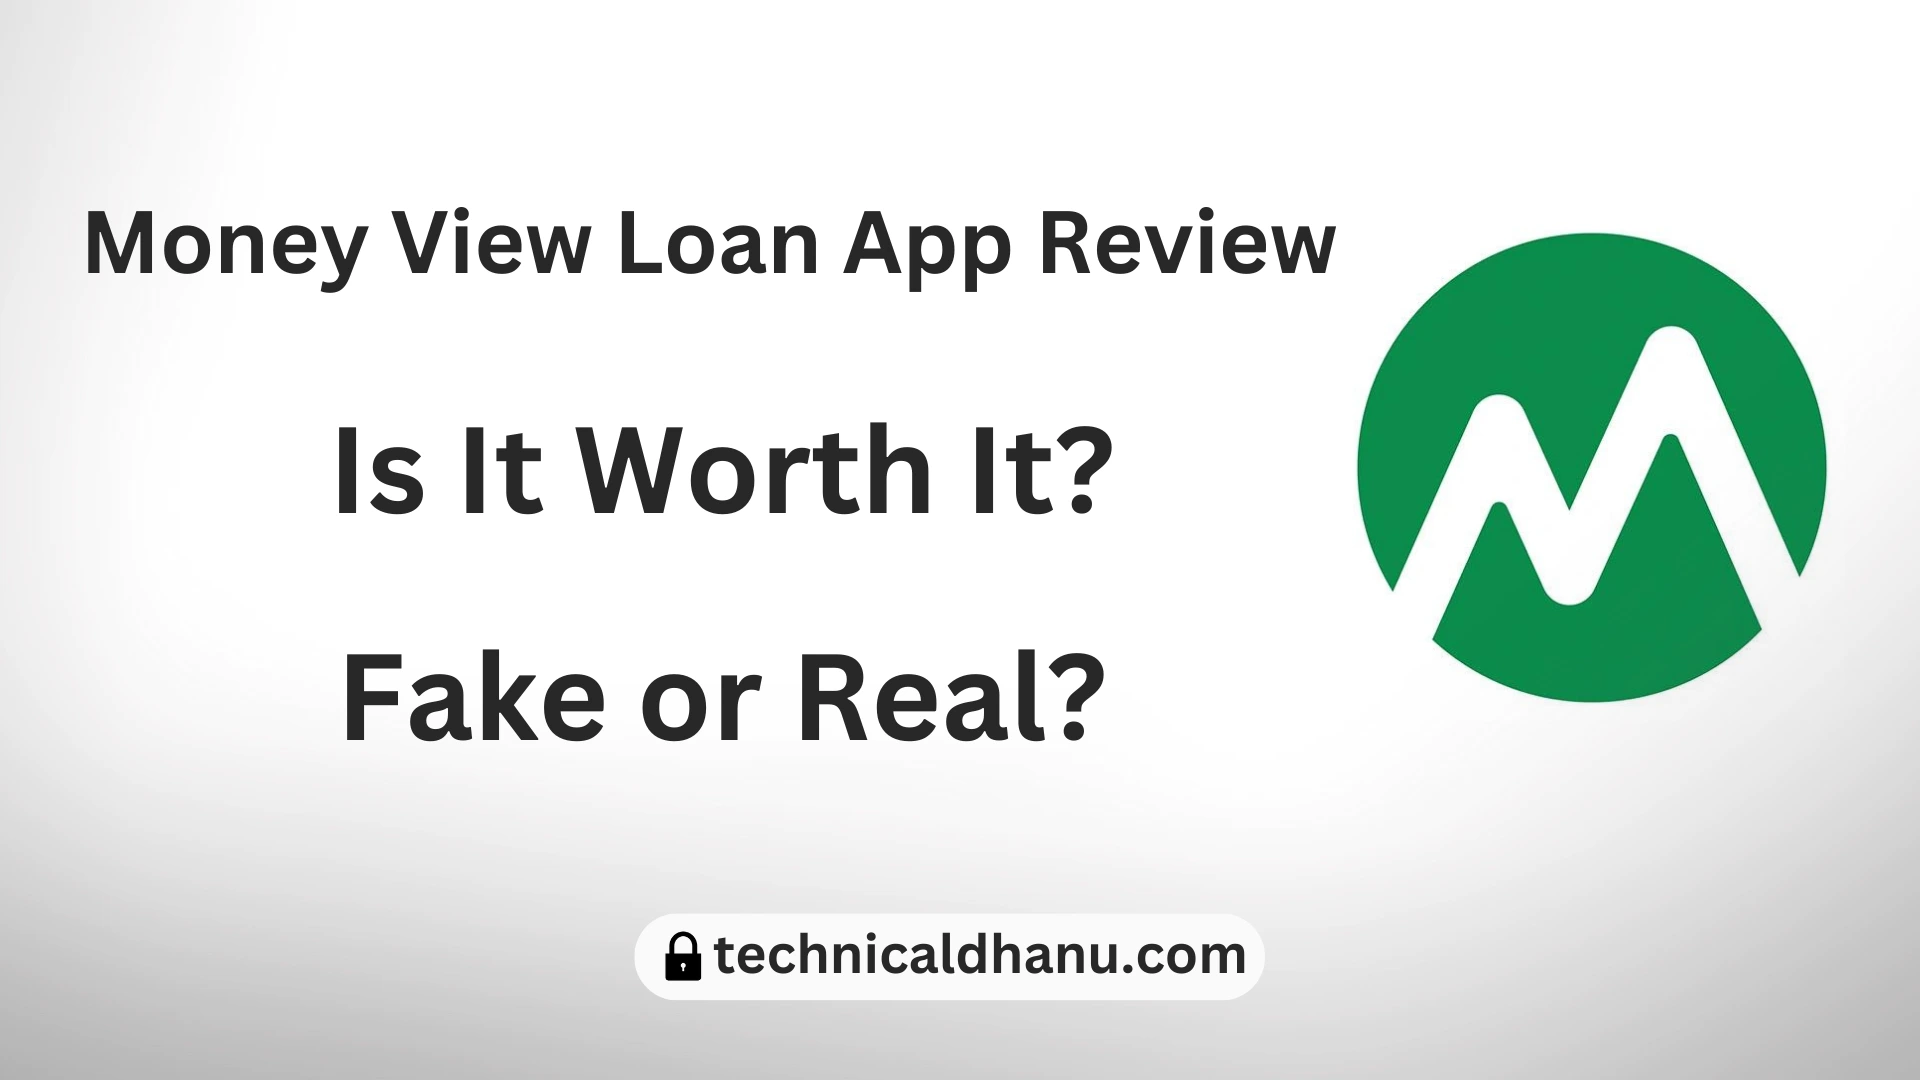 Money View Loan App Review: Is It Worth It?